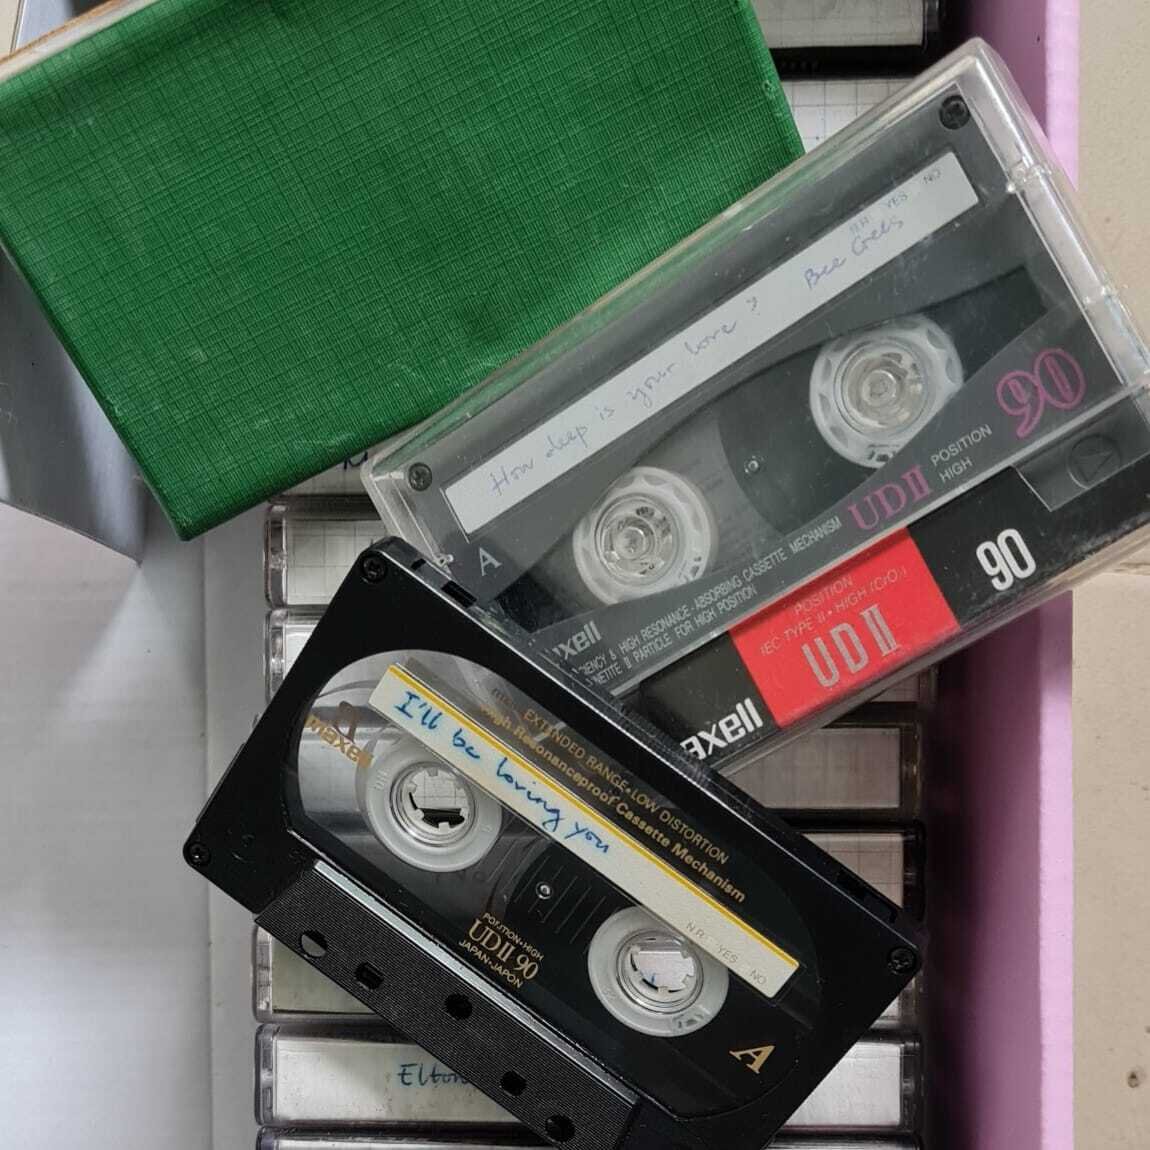 Sự xuất hiện của cuốn băng cassette gợi nhớ ký ức cả thời thơ ấu. Giữa nhịp sống hiện đại đầy hối hả, hình ảnh này bỗng trở thành niềm an ủi ngọt ngào cho tâm hồn hoài niệm. (Ảnh: Chibi Trần)